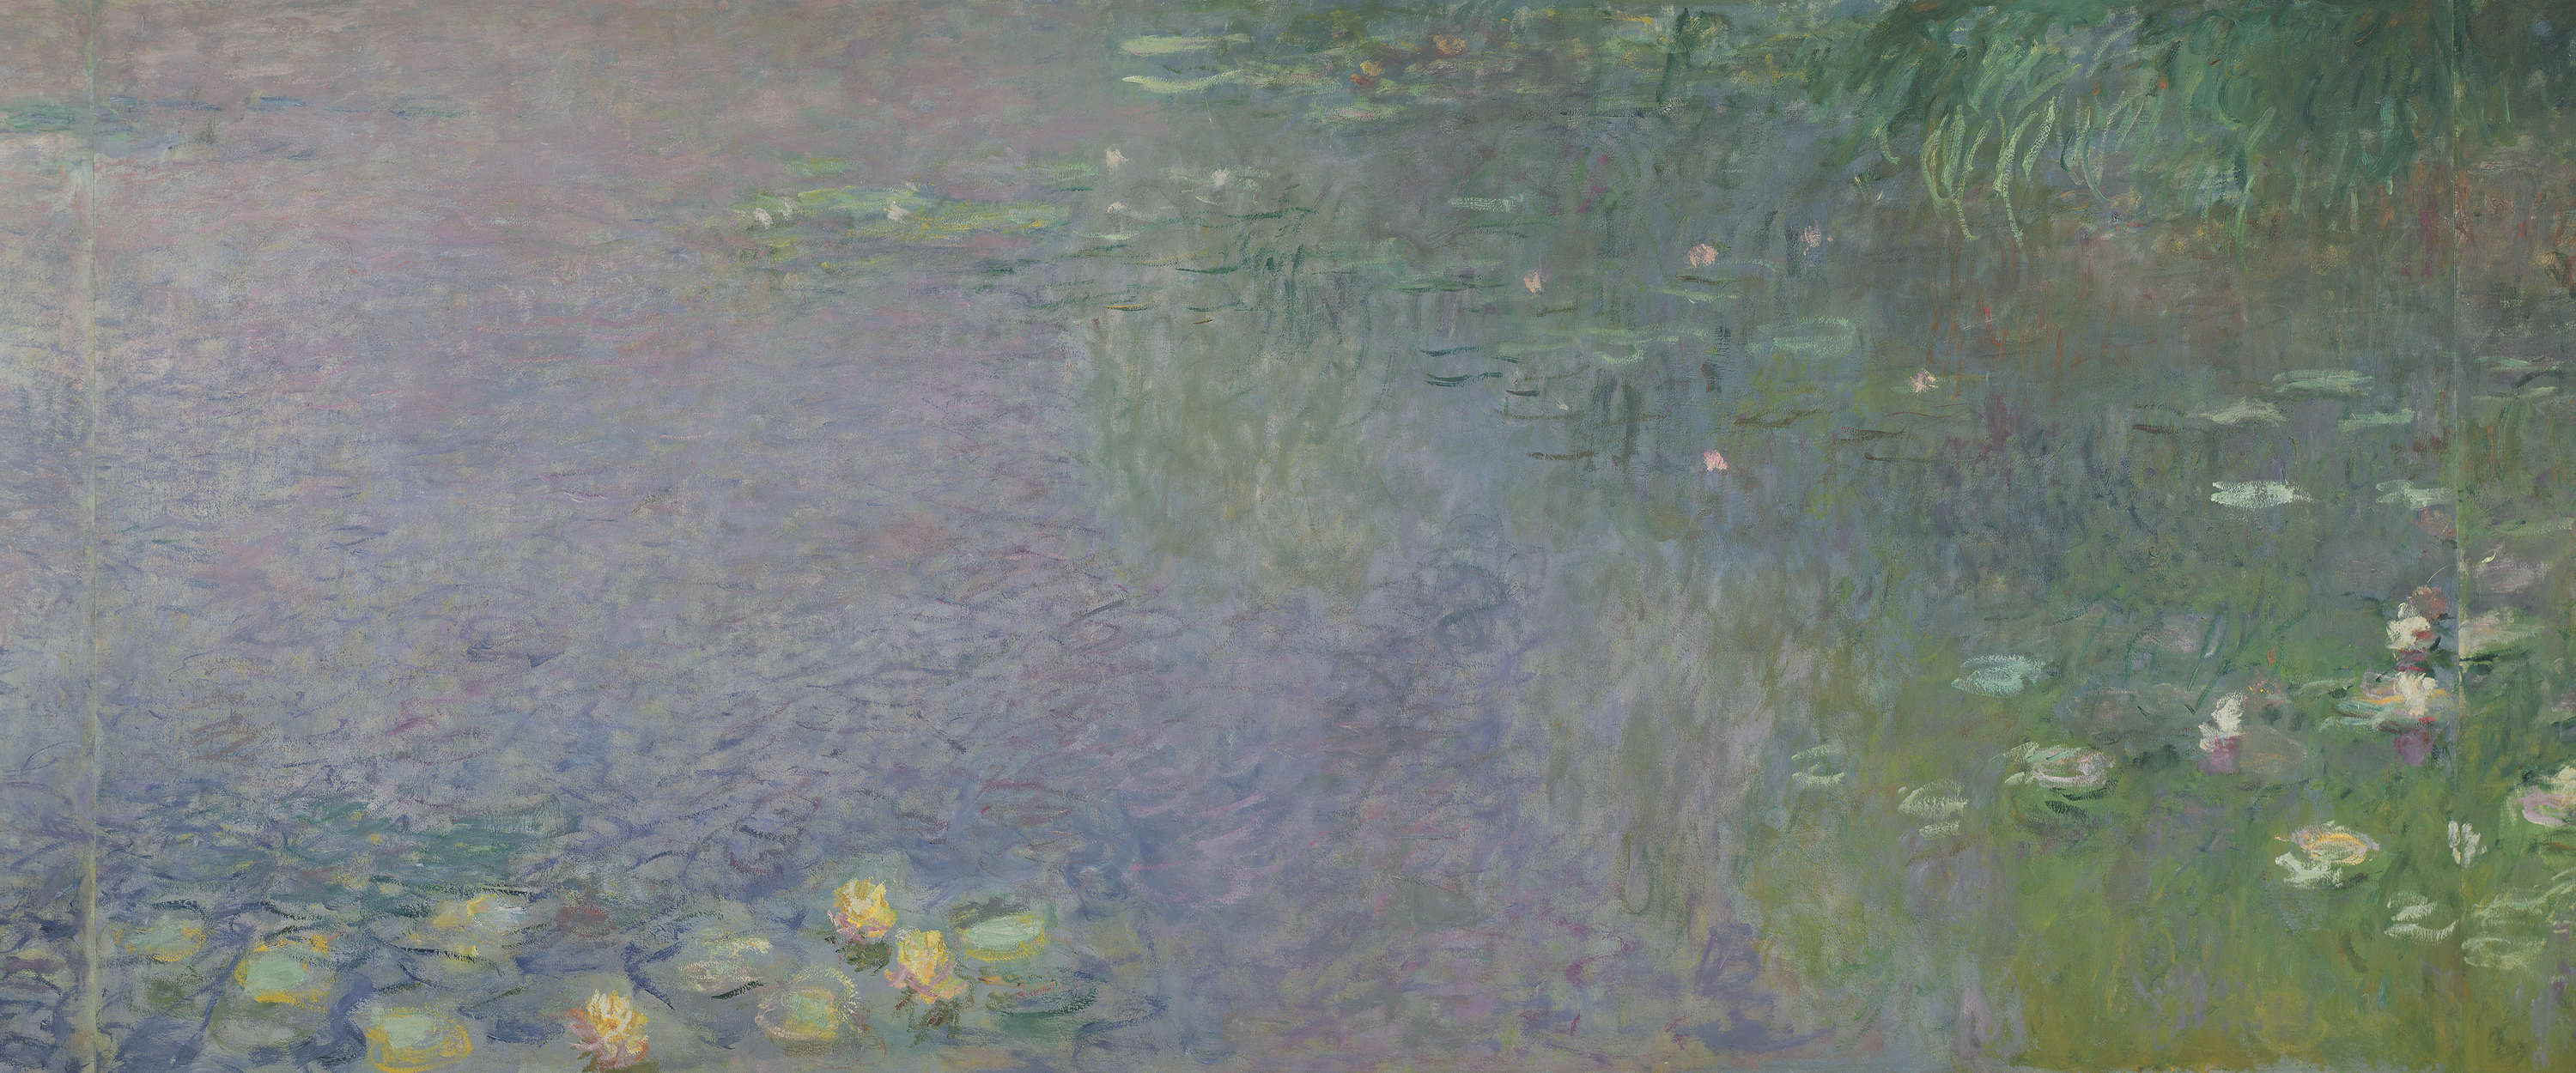             Fototapete "Seerosen: Morgen" von Claude Monet
        